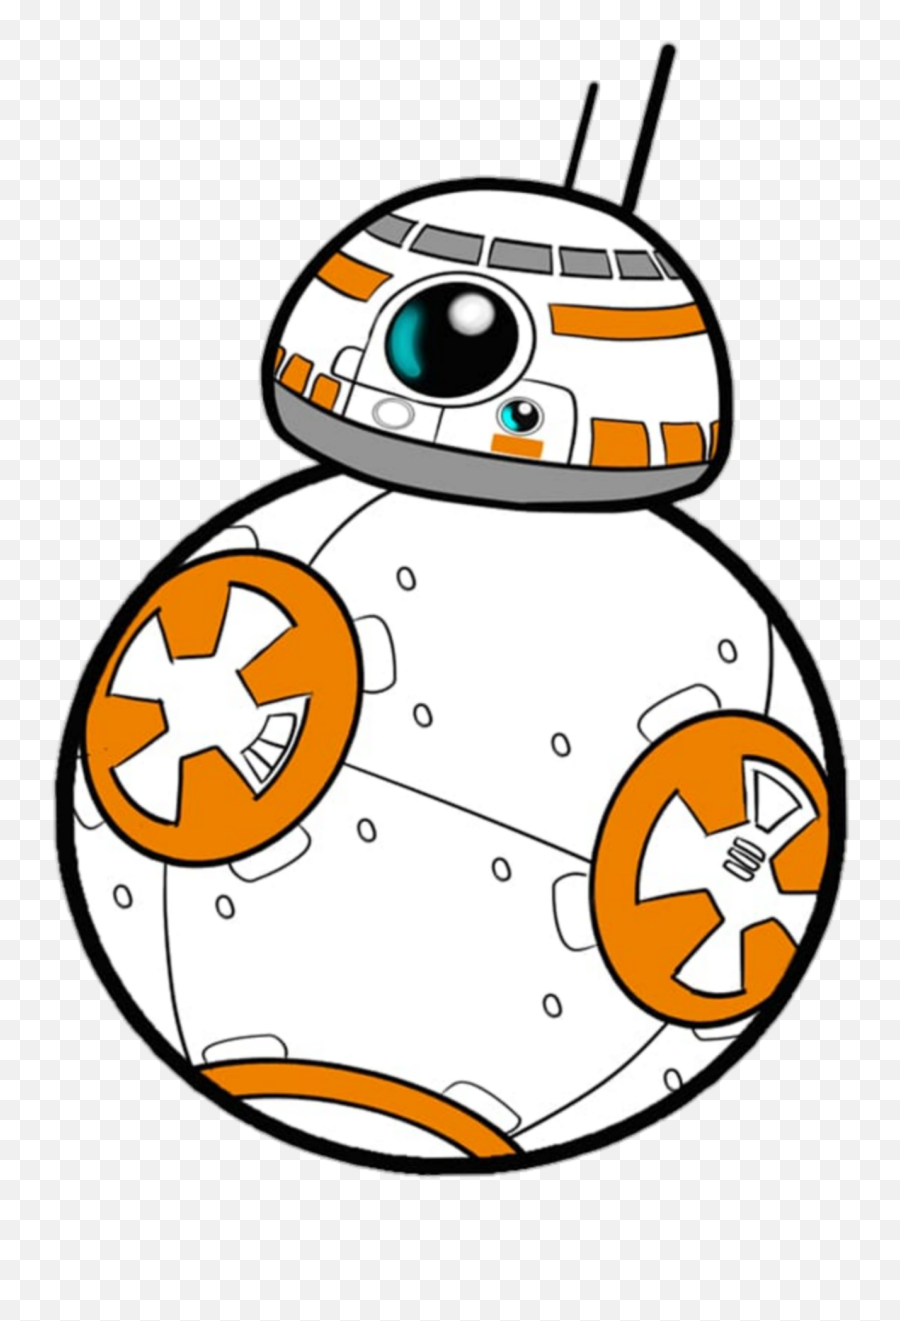 Starwars Disney Droid Droids Bb8 - Star Wars Bb8 Cartoon Emoji,Bb8 Emoji